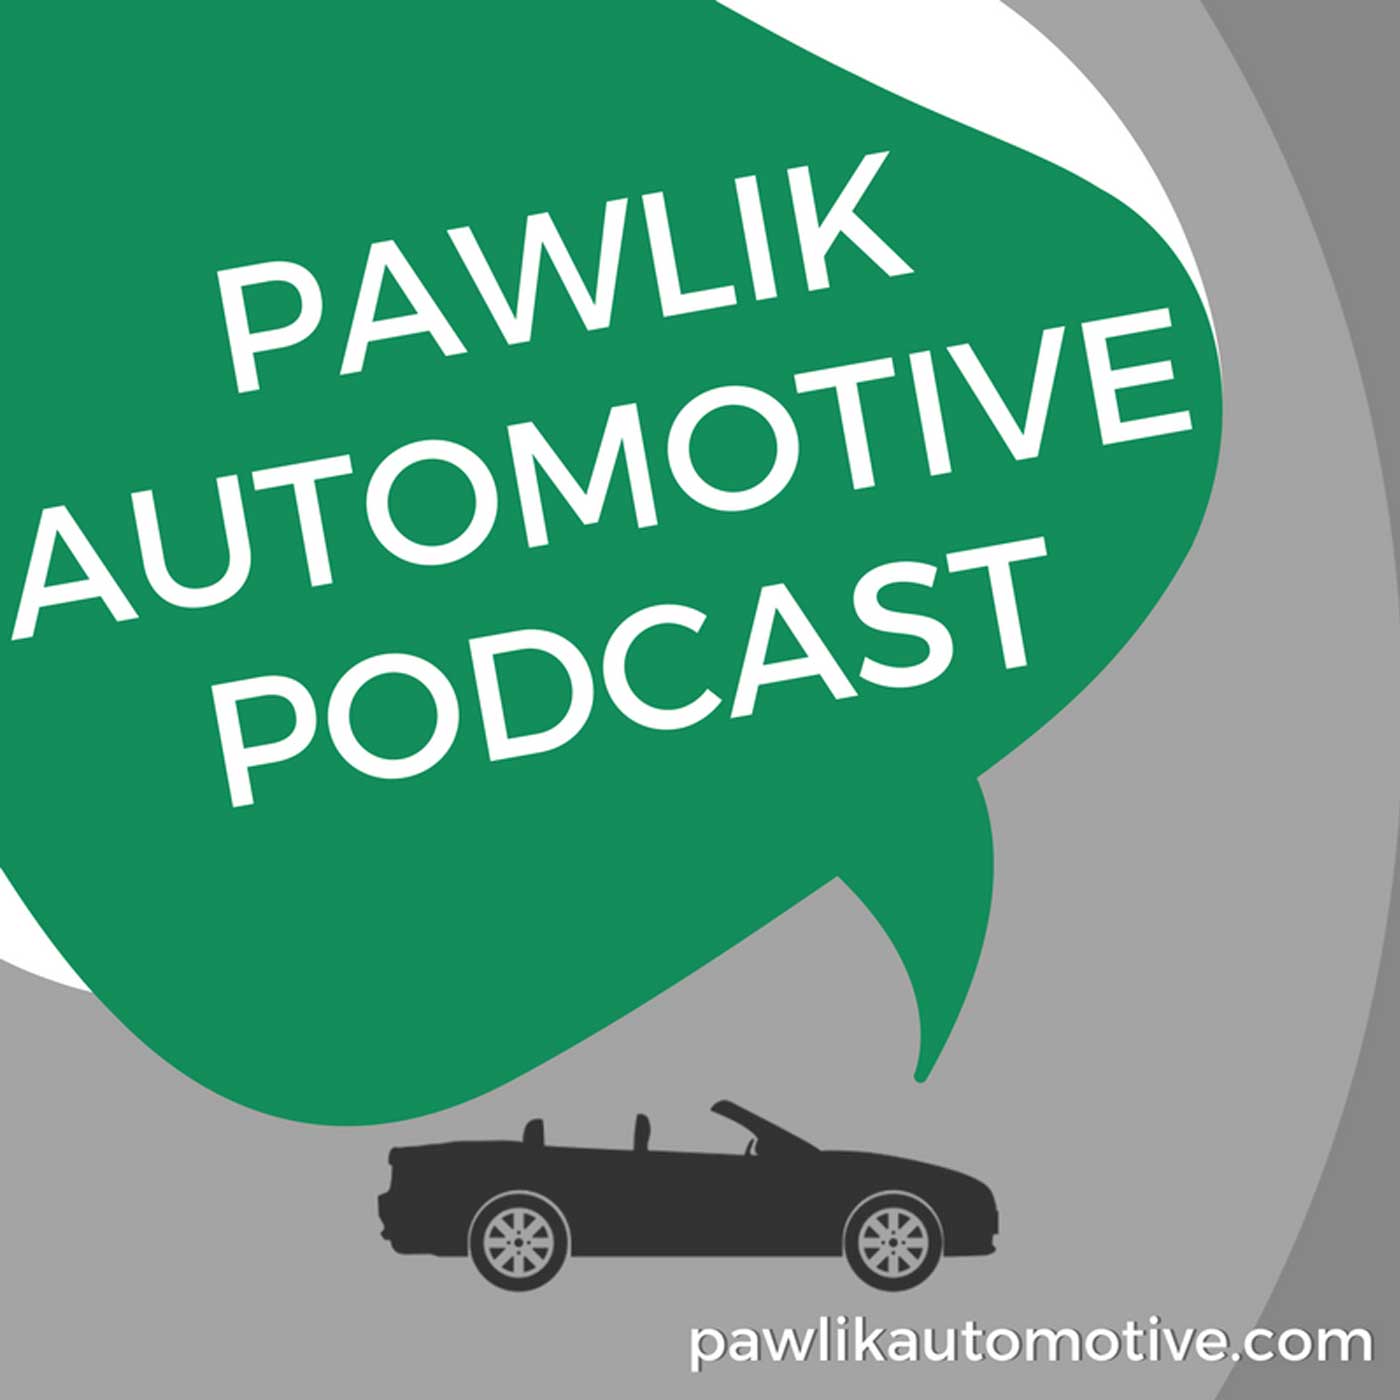 Pawlik Automotive Podcast podcast show image